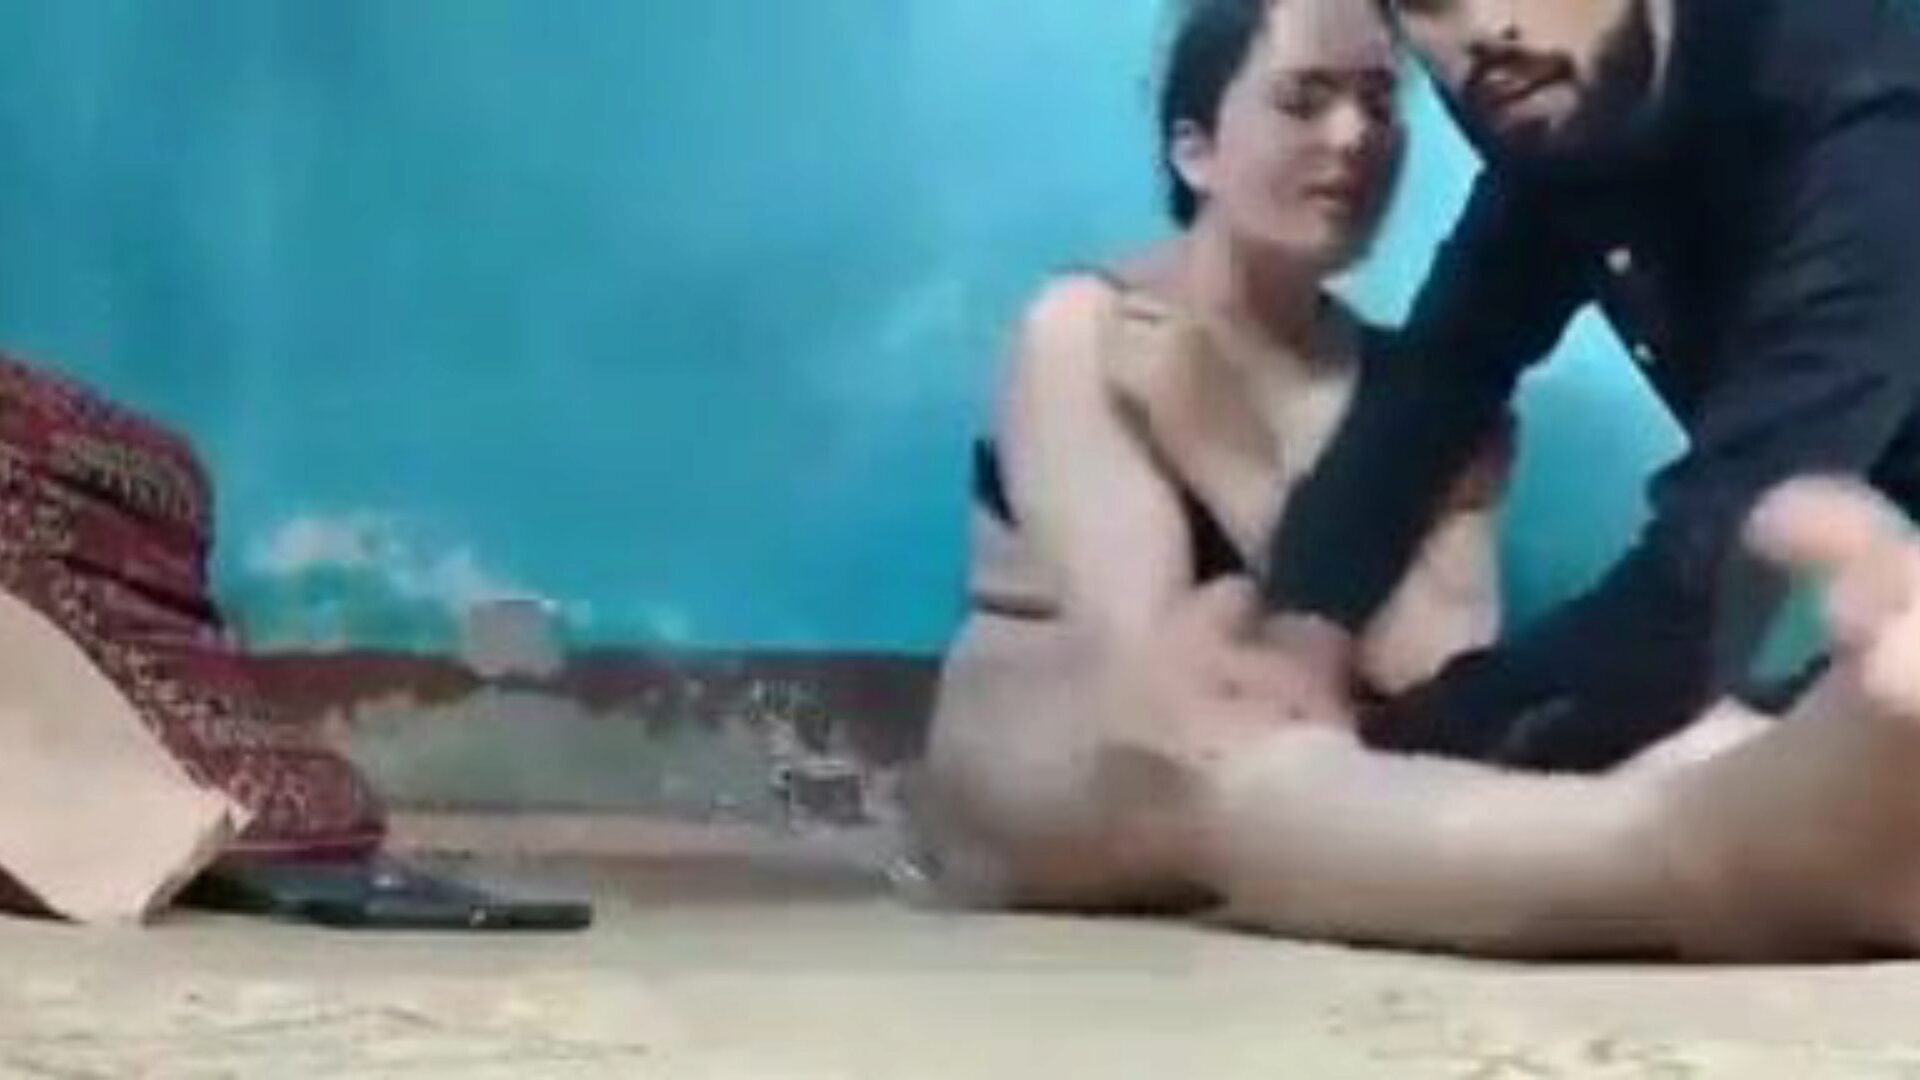 kashmirin seksivideo: ilmainen intialainen porno video 69 - xhamster katsella kashmirin seksivideoputki bang-out video ilmaiseksi xhamsterilla, seksikkäimmällä kokoelmalla intialaisia ​​xxx ilmaisia ​​seksi- ja tarina porno jaksoja